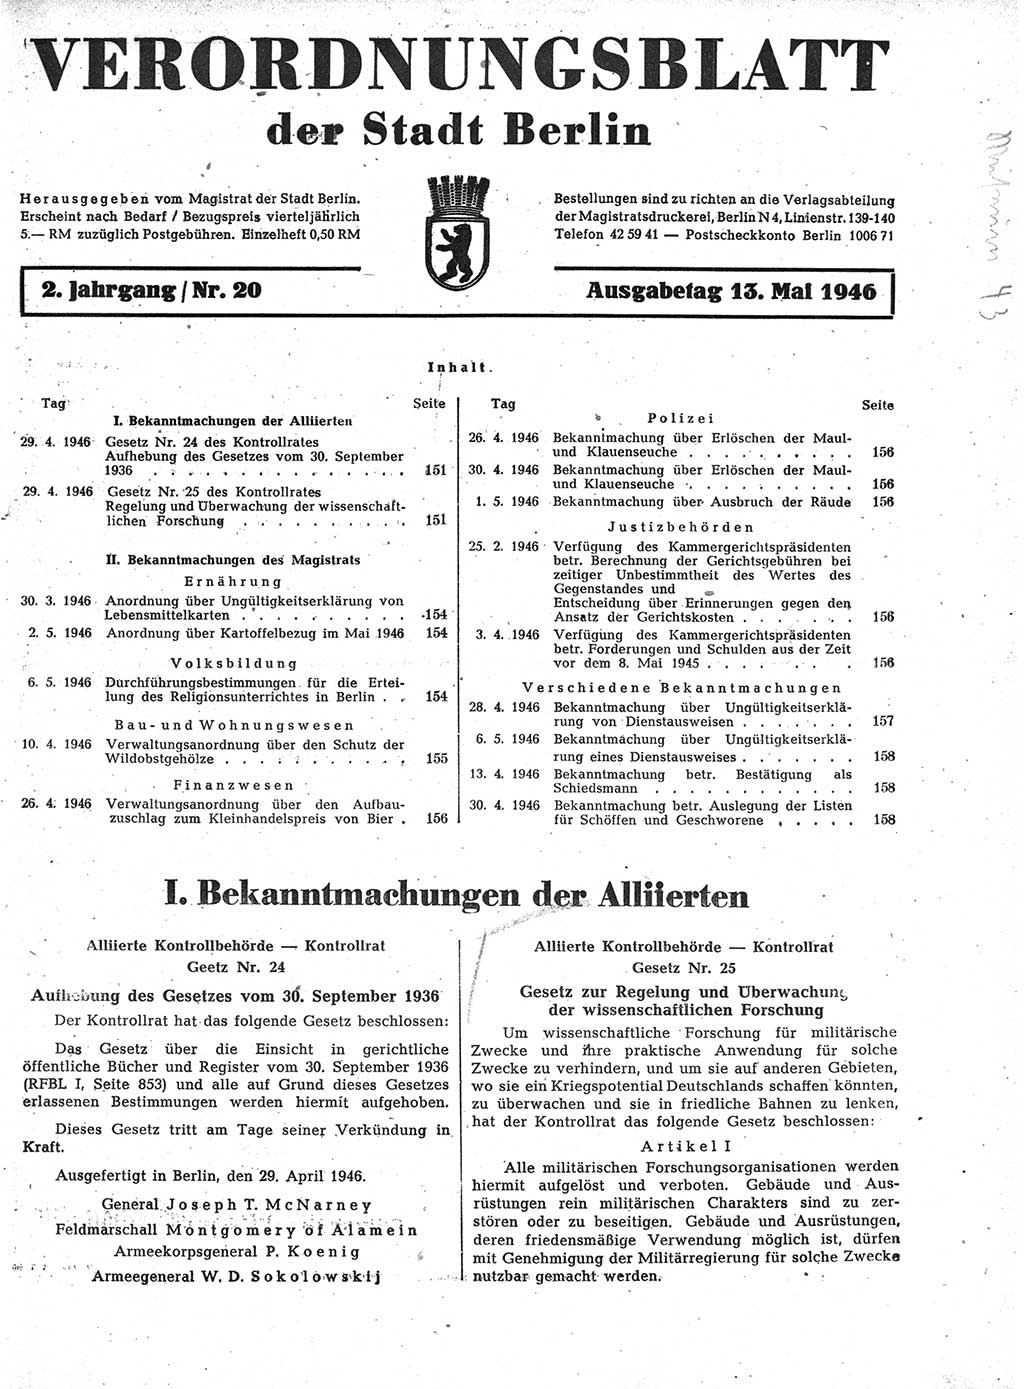 Verordnungsblatt (VOBl.) der Stadt Berlin, für Groß-Berlin 1946, Seite 151 (VOBl. Bln. 1946, S. 151)